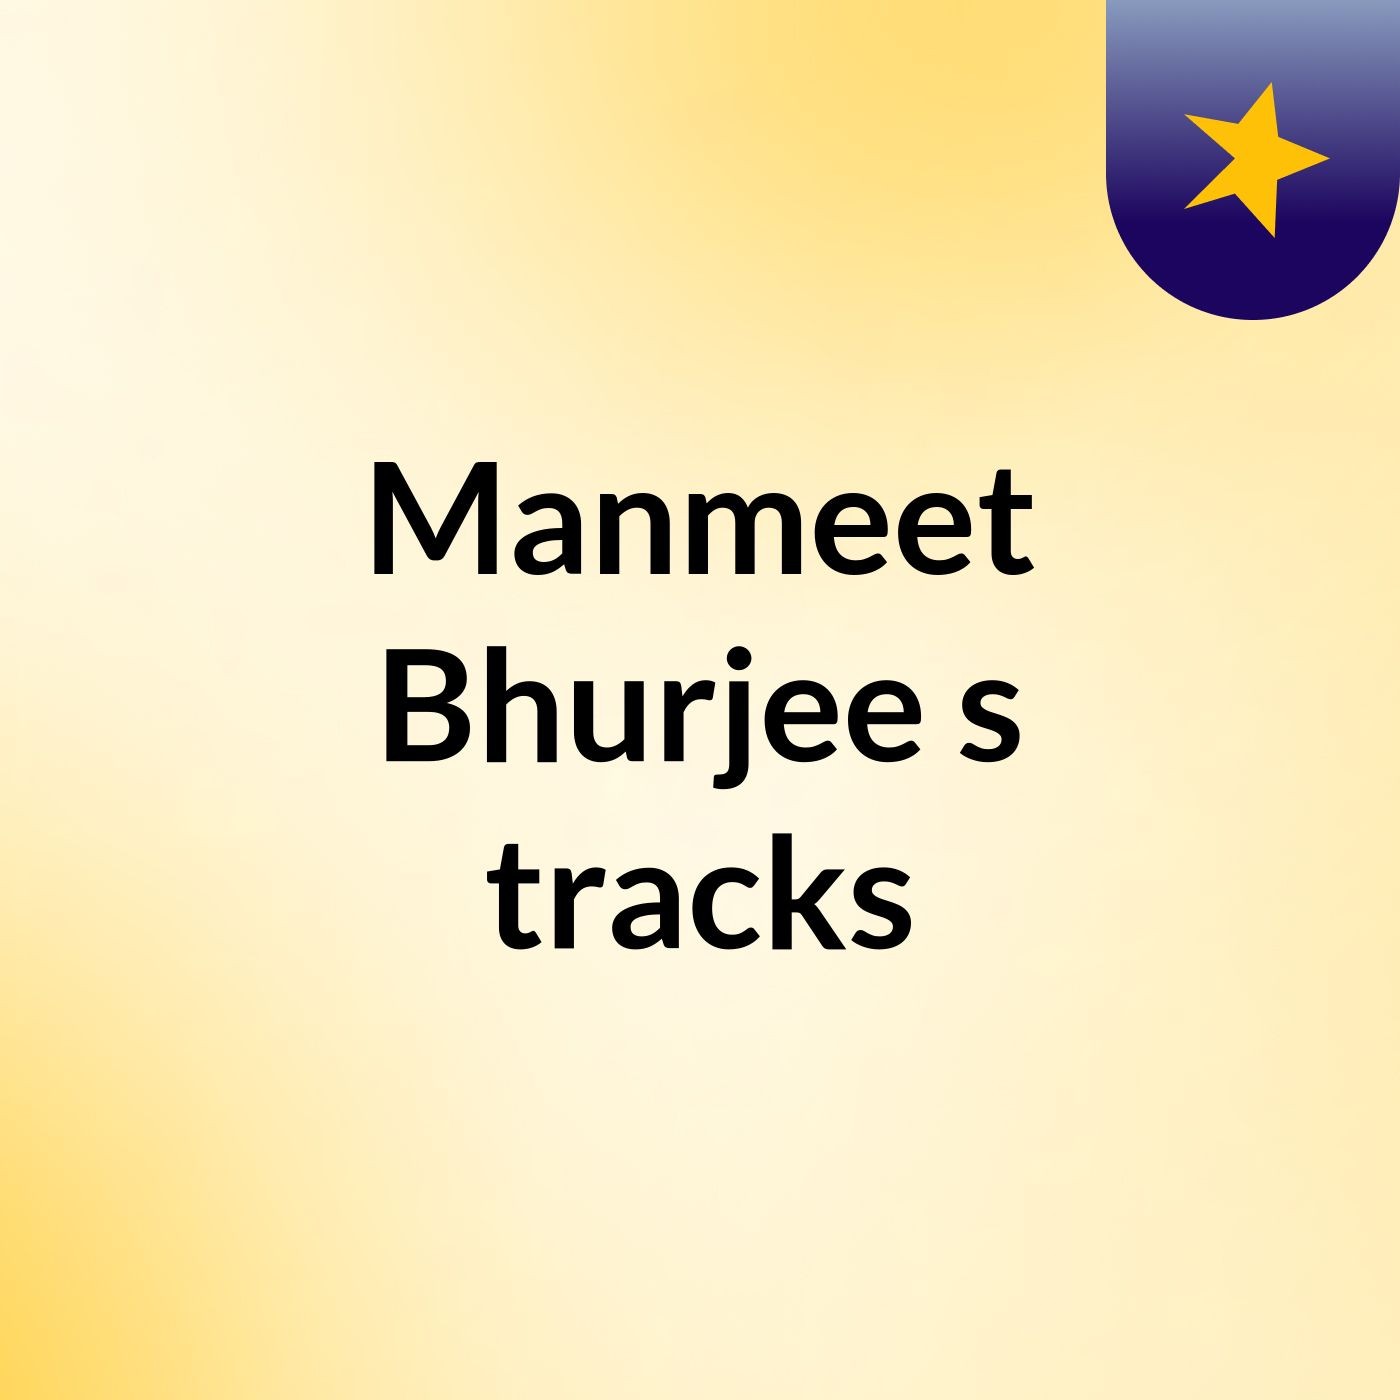 Manmeet Bhurjee's tracks